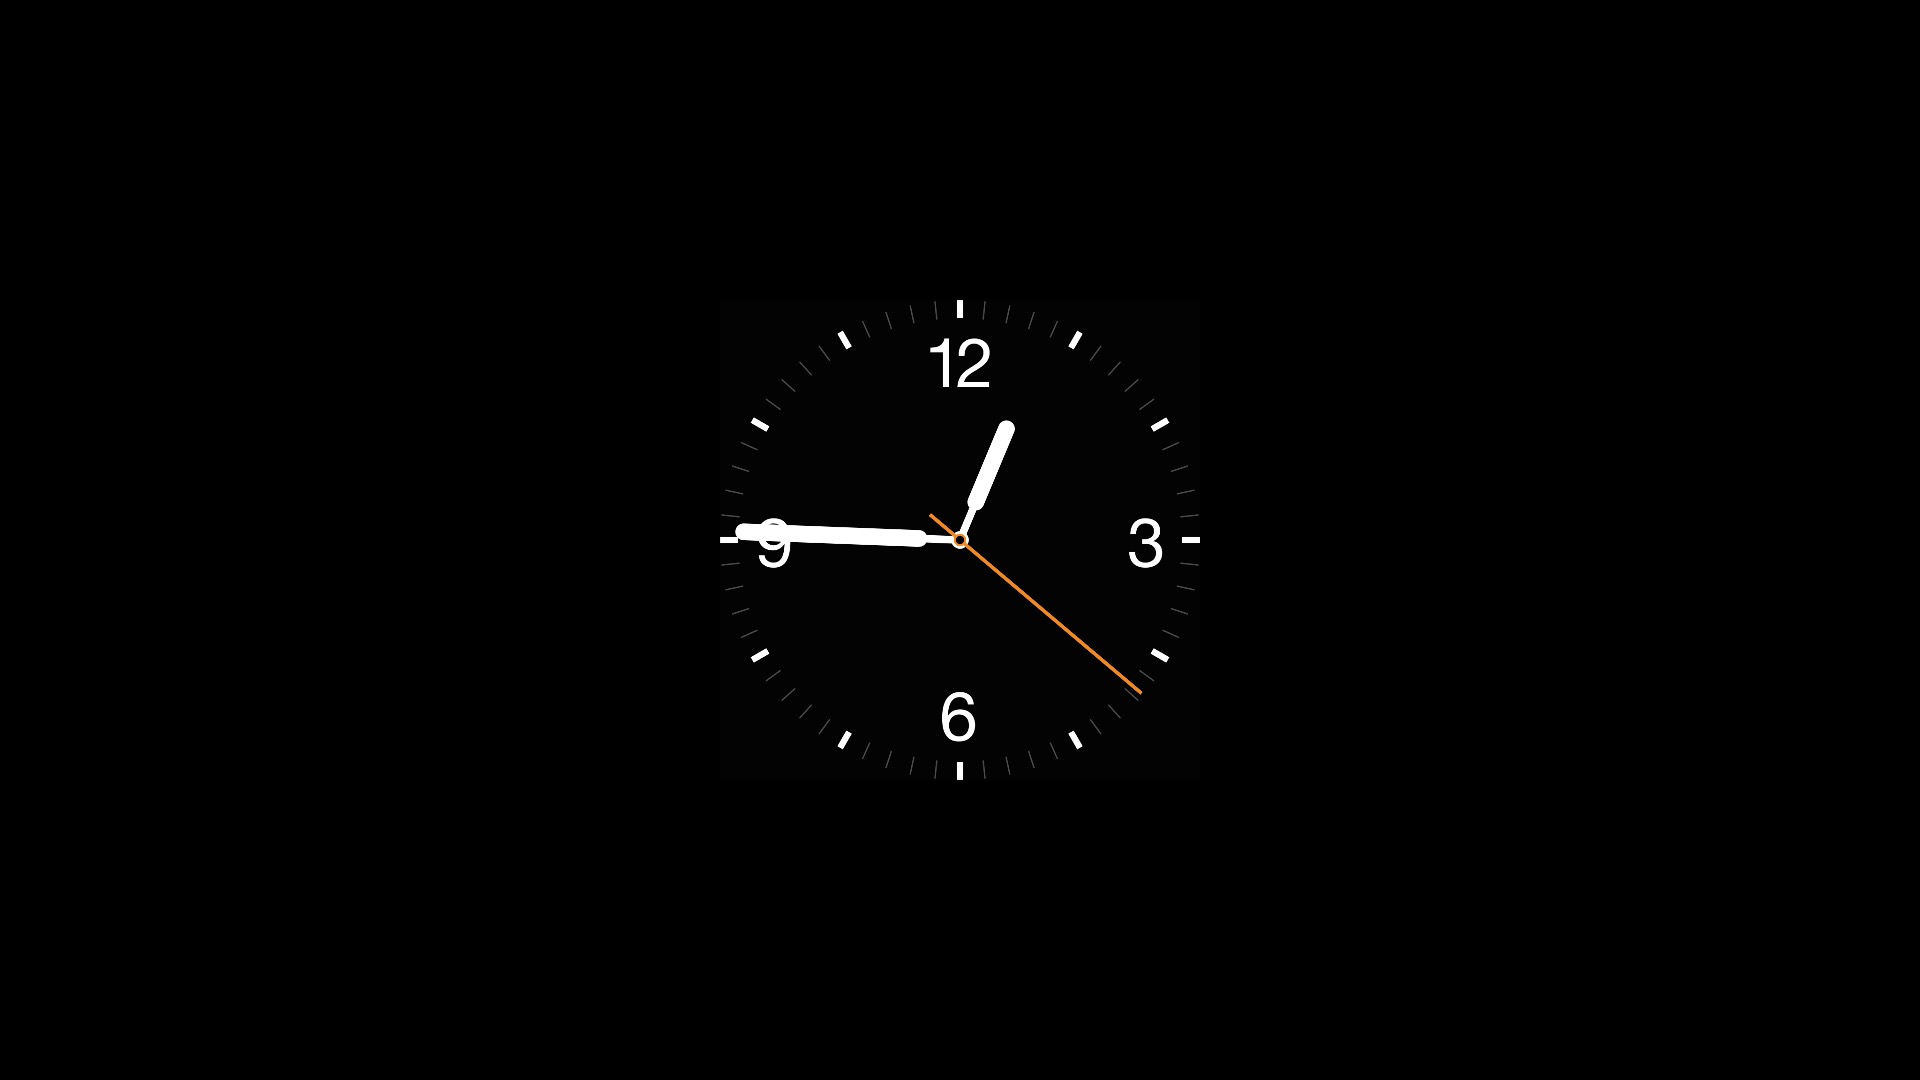 Картинка часы на телефон. Часы на черном фоне. Заставка на часы. Стильные часы на заставку. Обои на рабочий стол часы.